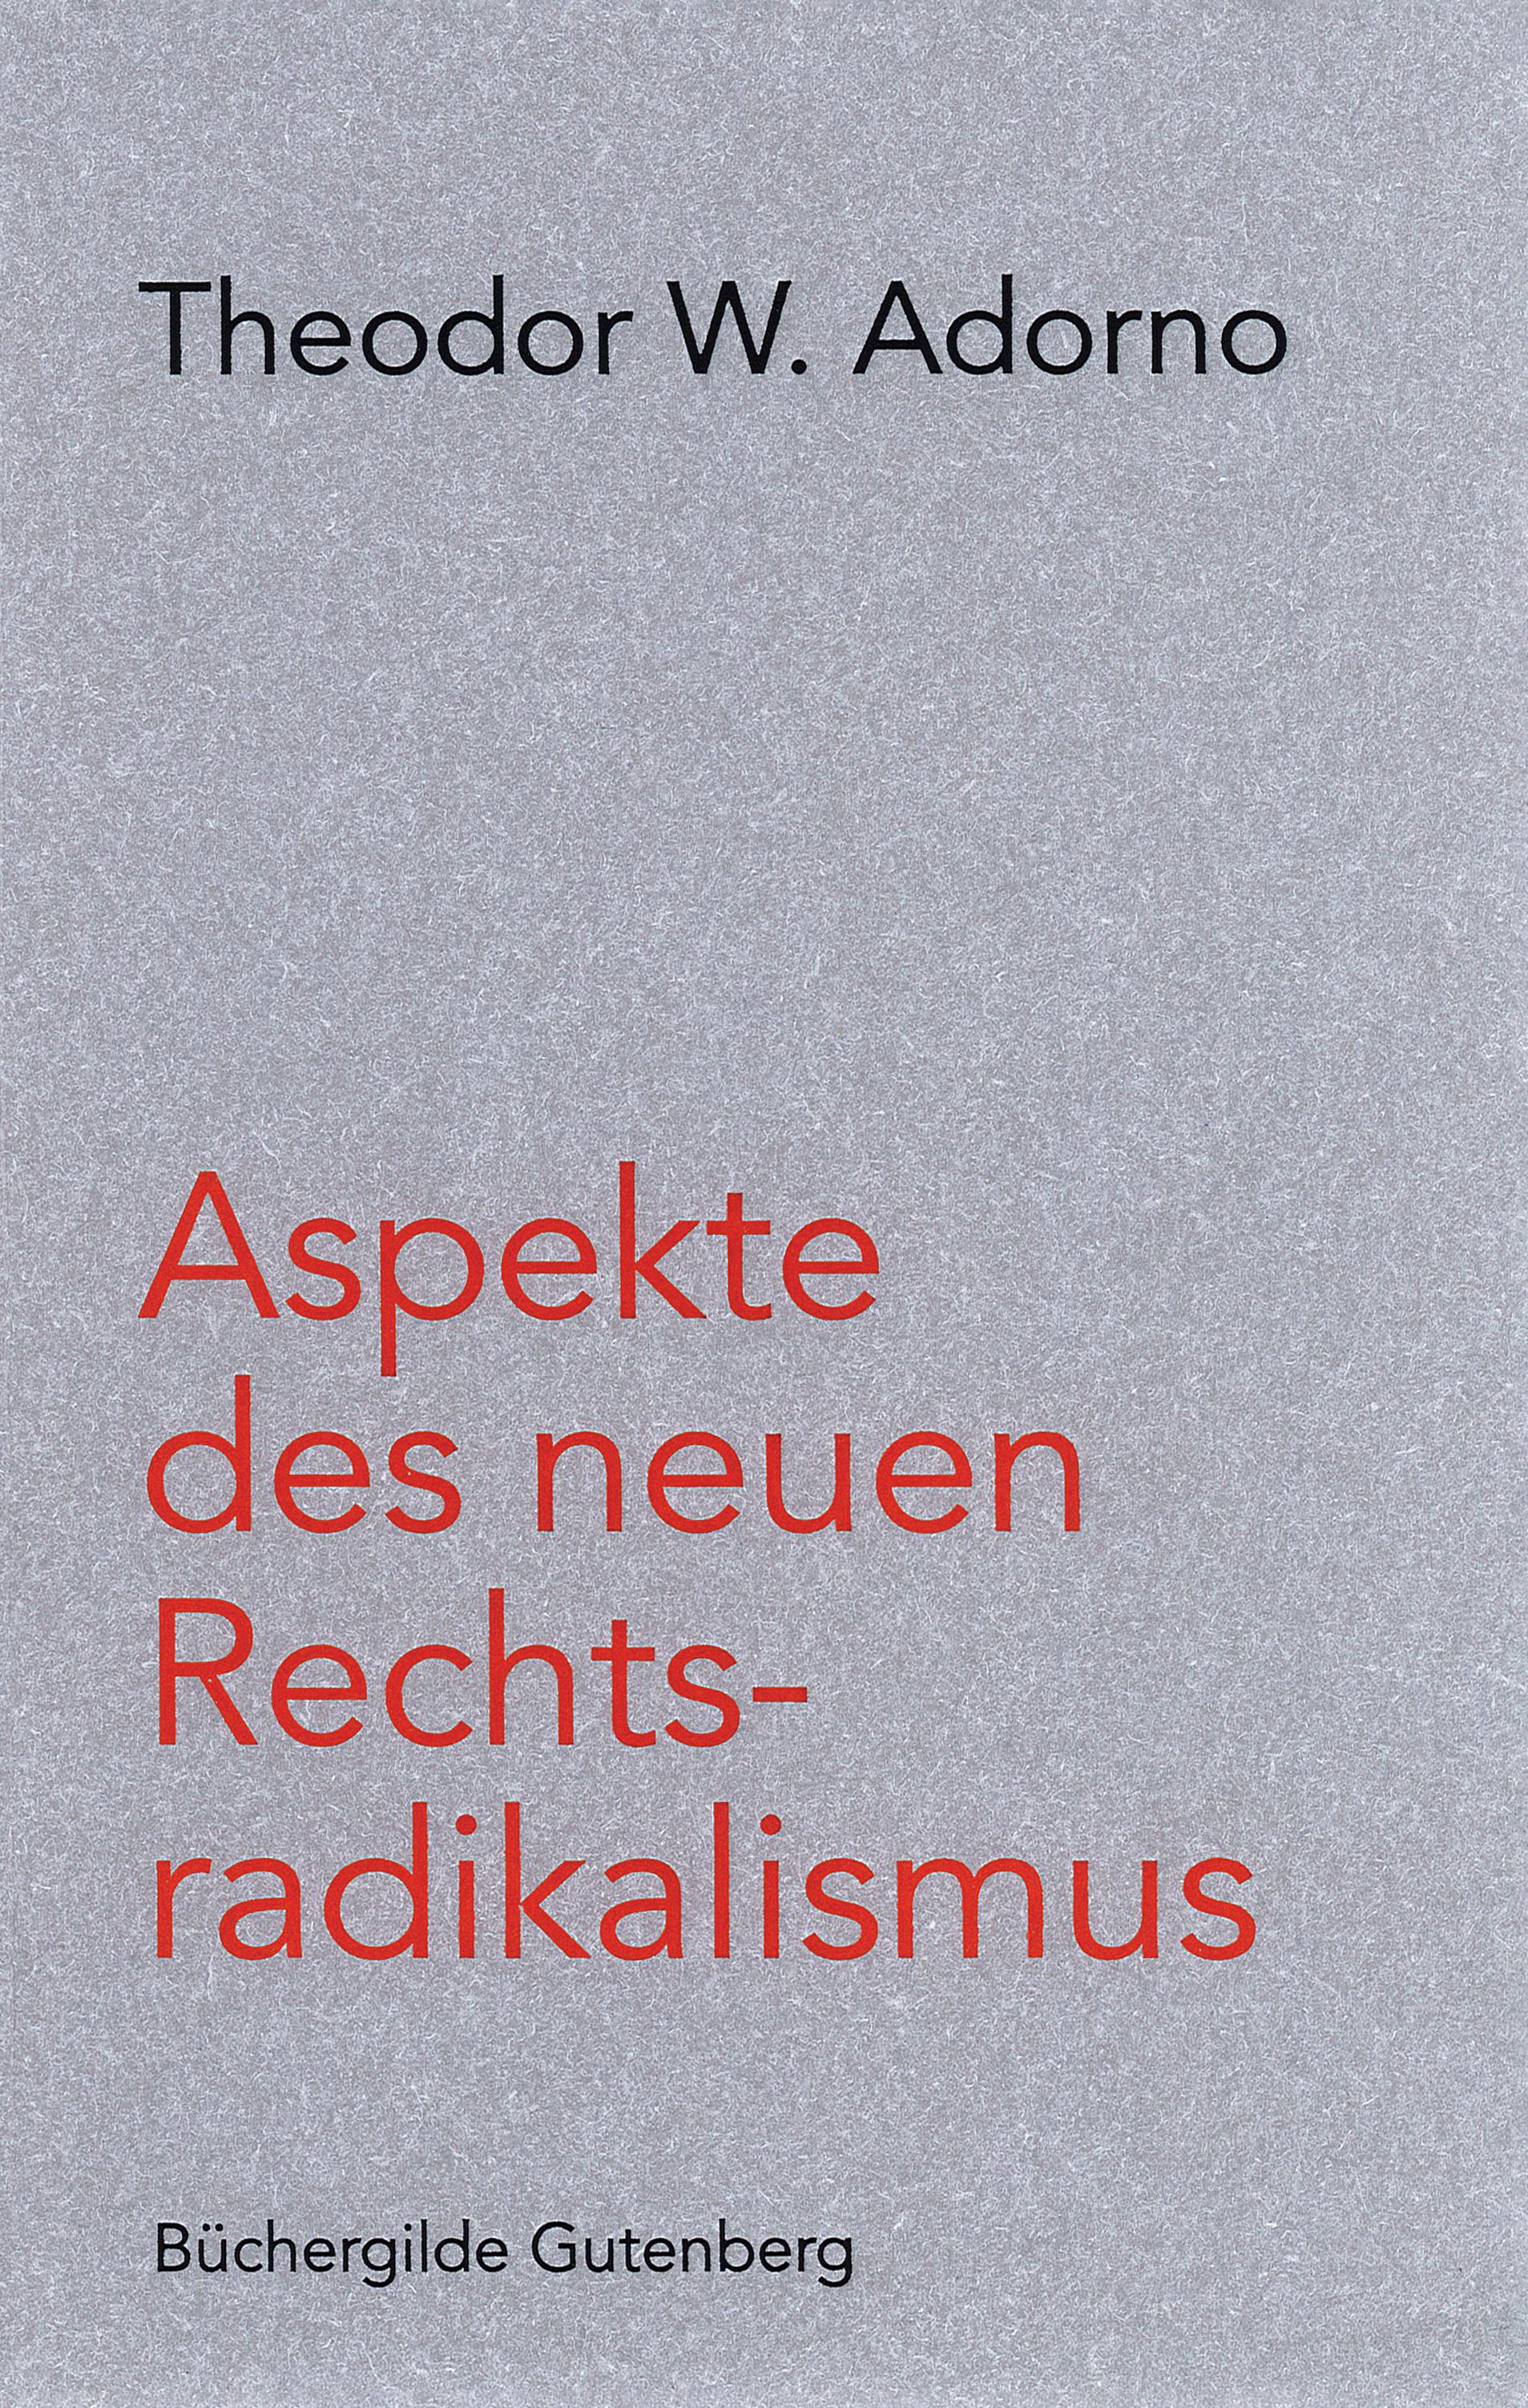 171619_Adorno_Rechtsradikalismus_FR_01.jpg